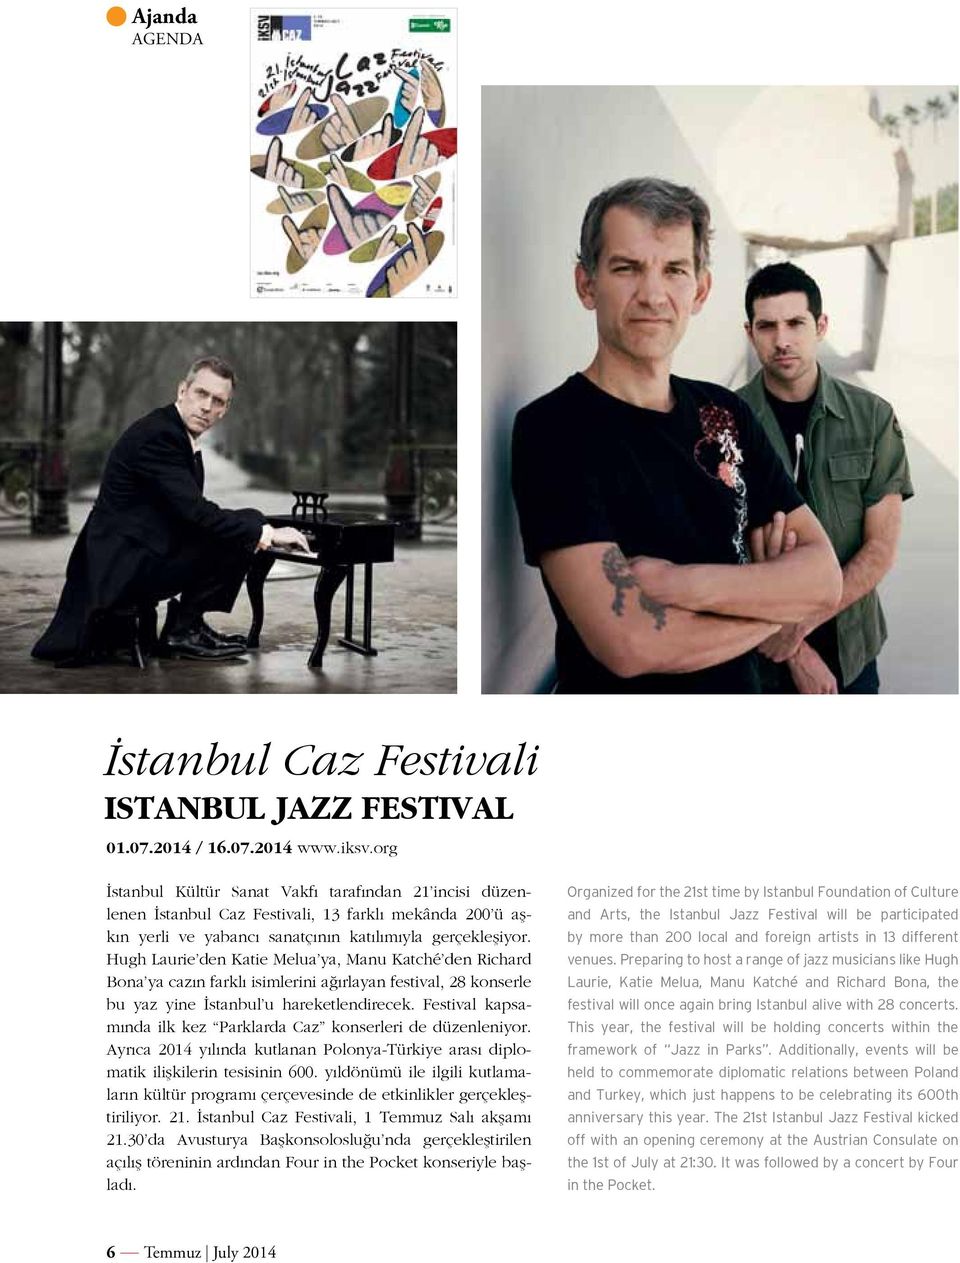 Hugh Laurie den Katie Melua ya, Manu Katché den Richard Bona ya cazın farklı isimlerini ağırlayan festival, 28 konserle bu yaz yine İstanbul u hareketlendirecek.